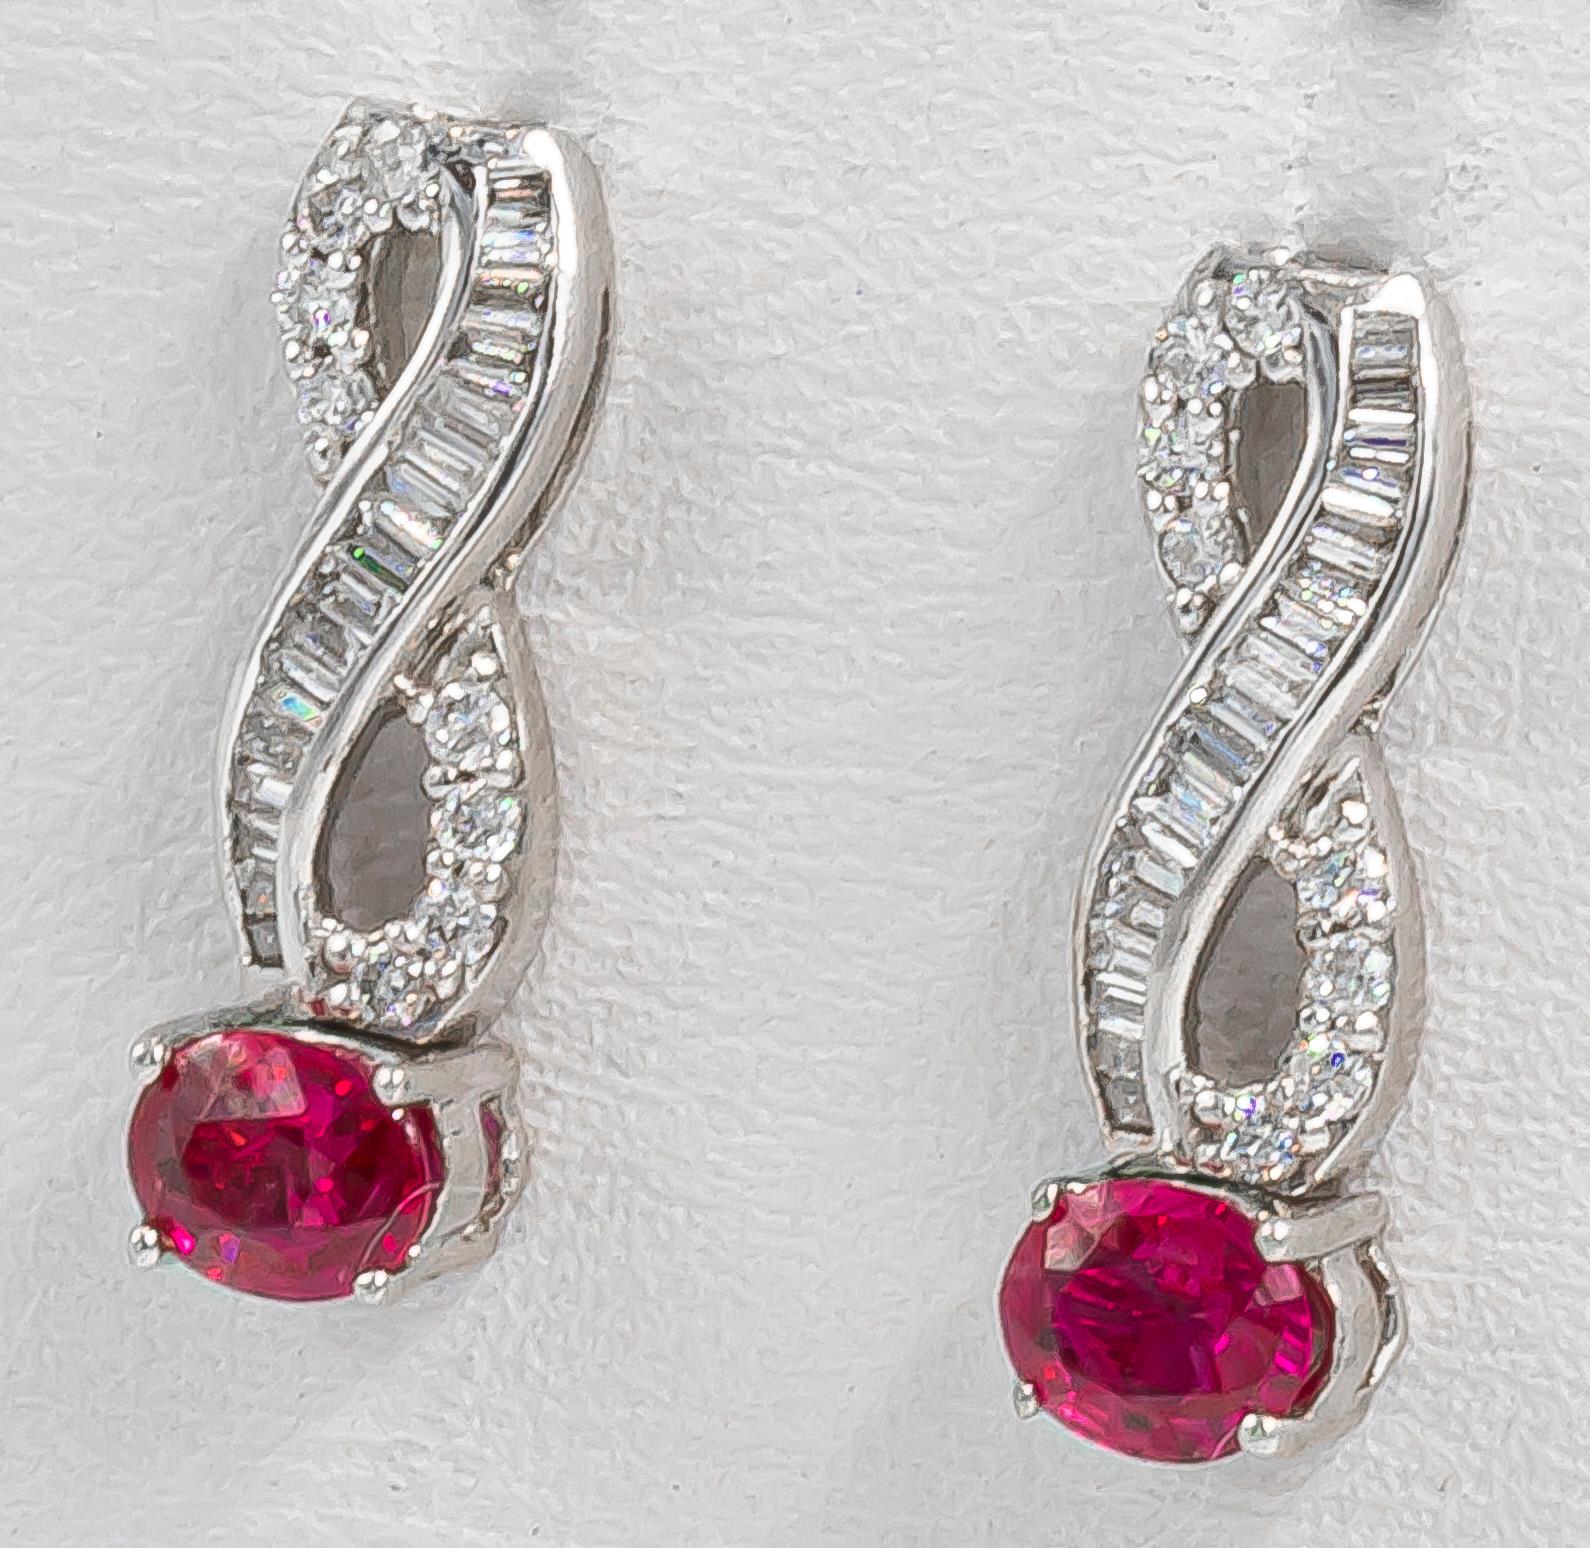 Oval Cut Very Fine Ruby Earrings with Diamonds 18 Karat Gold